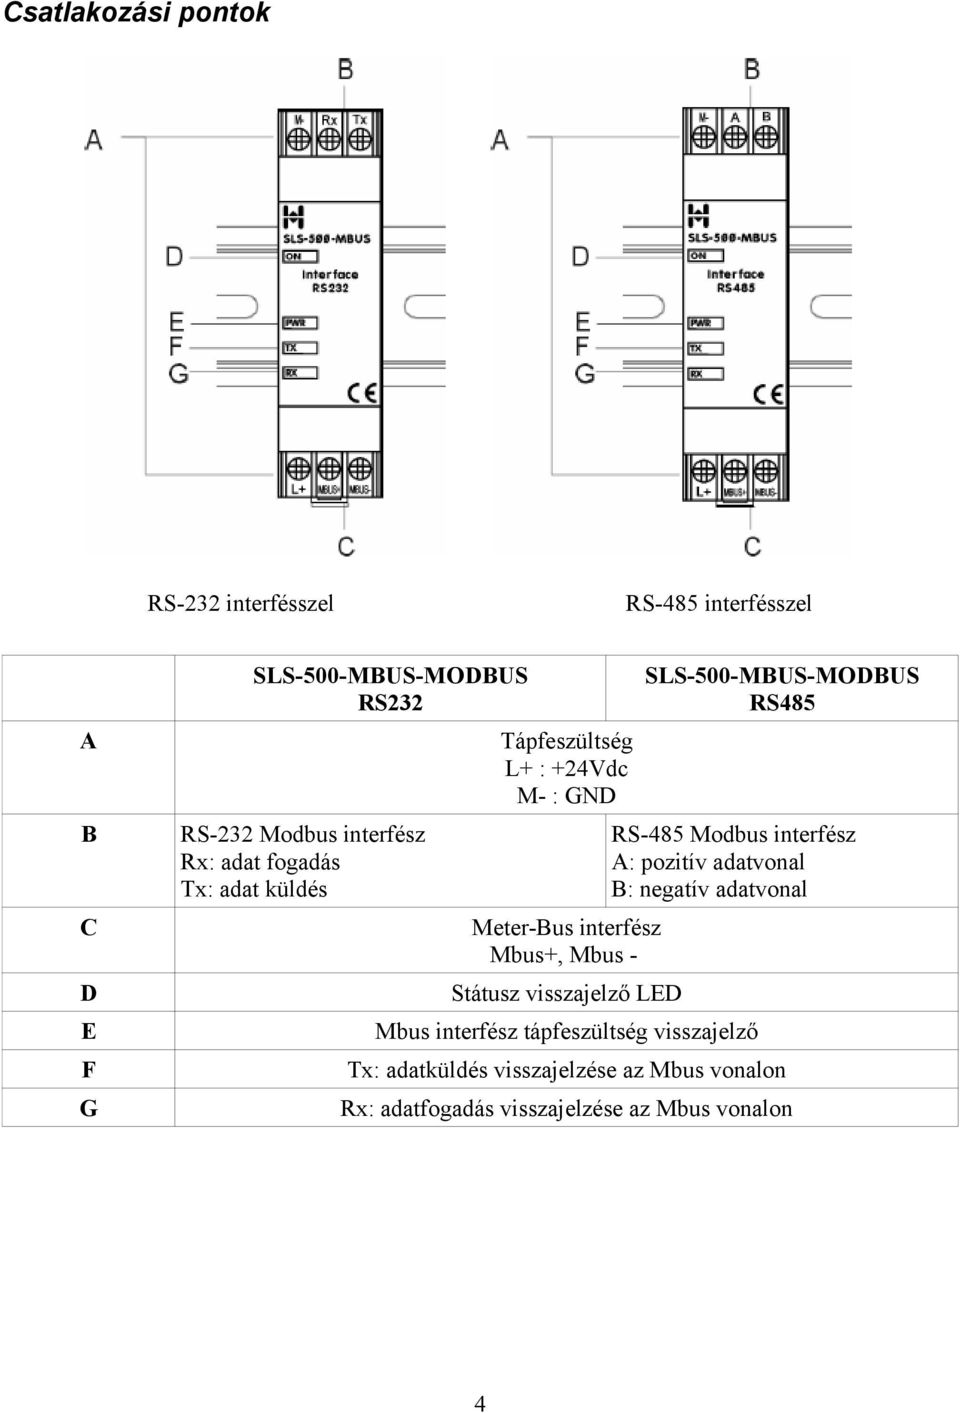 Státusz visszajelző LED SLS-500-MBUS-MODBUS RS485 RS-485 Modbus interfész A: pozitív adatvonal B: negatív adatvonal